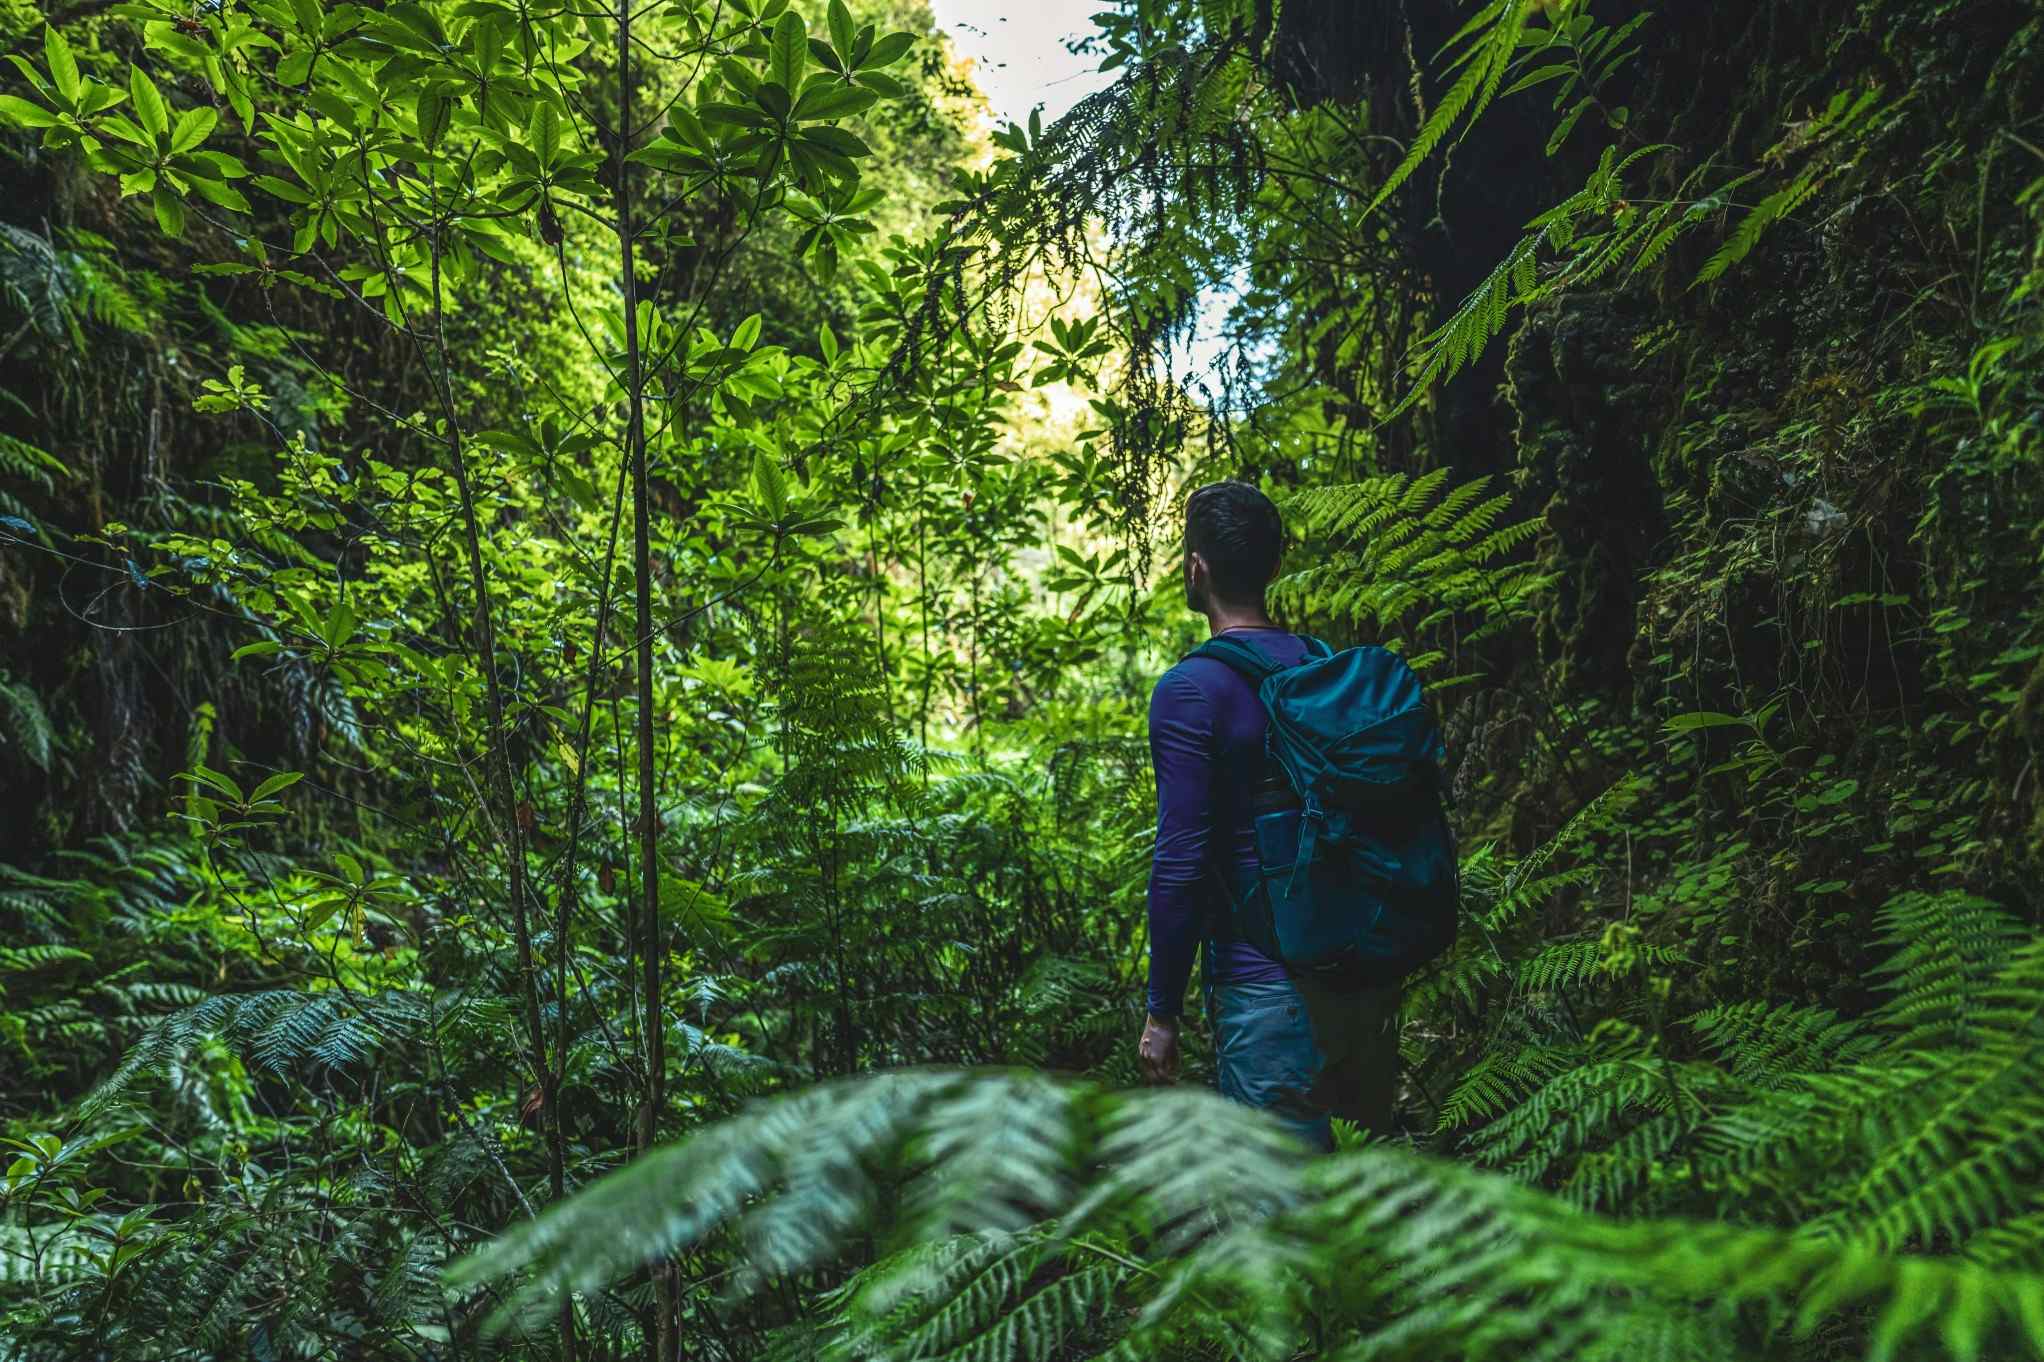 Hiking in dense rainforest along the Camino de Costa Rica route. Photo: Getty